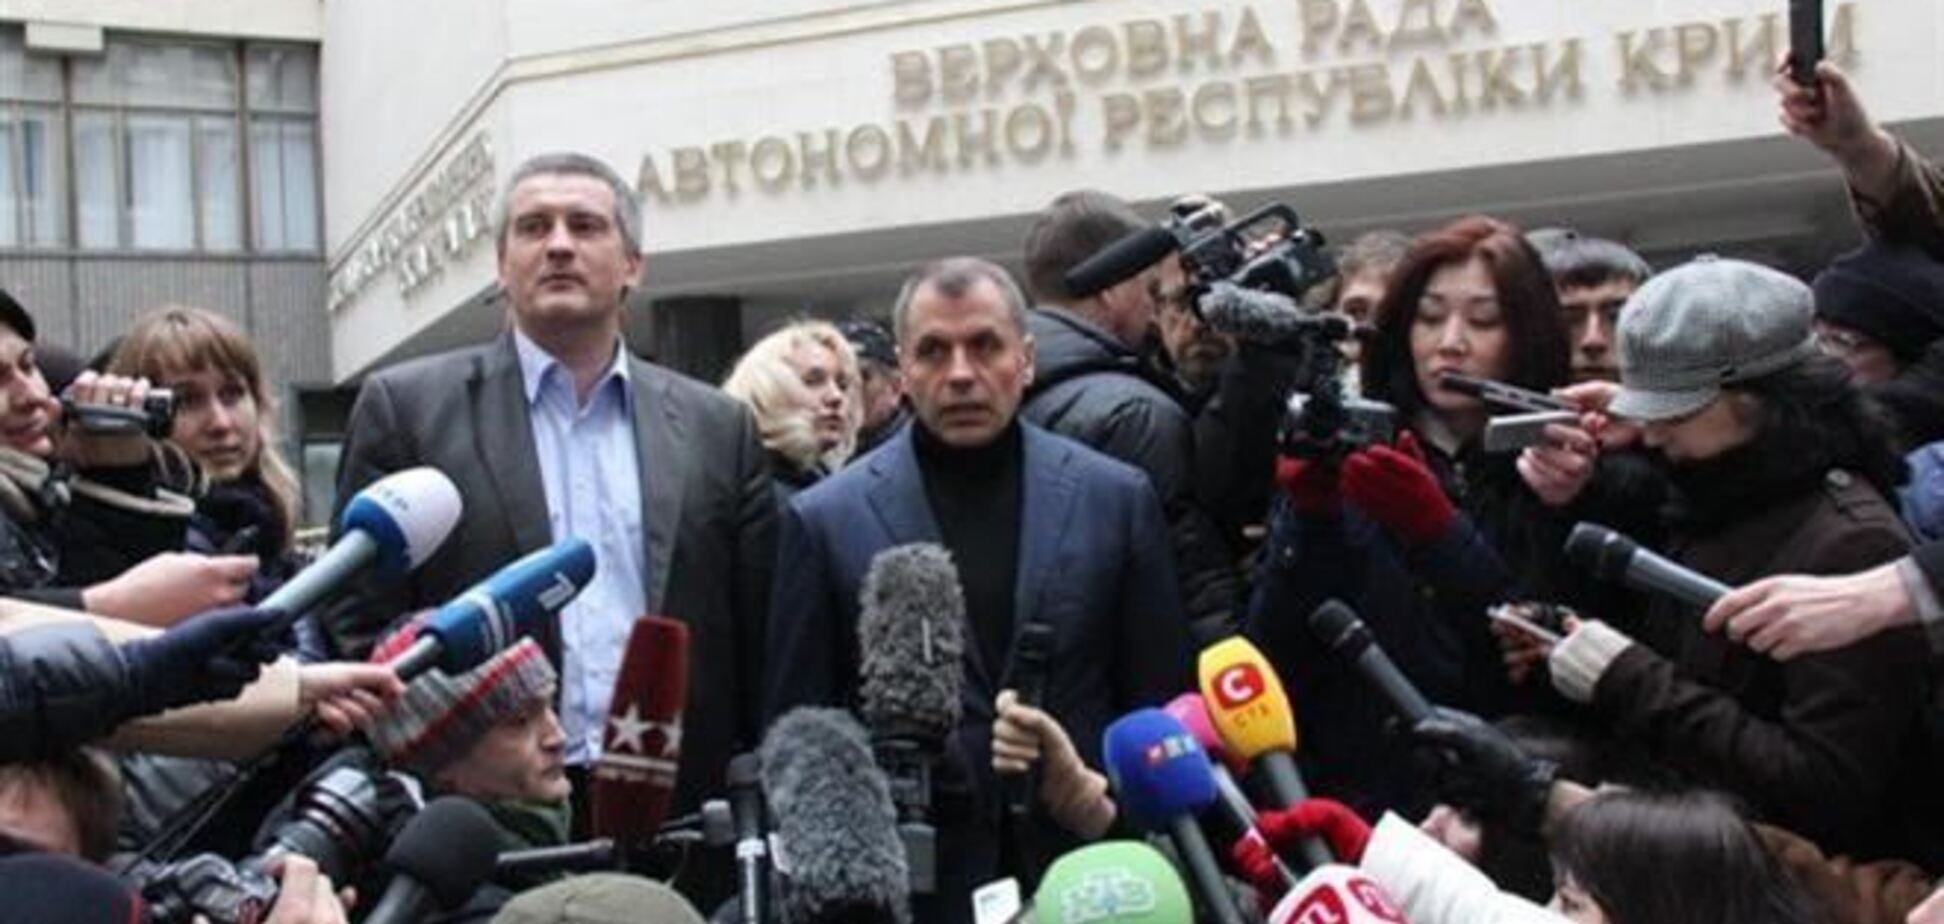 Константинов срочно созывает сессию крымского парламента - СМИ